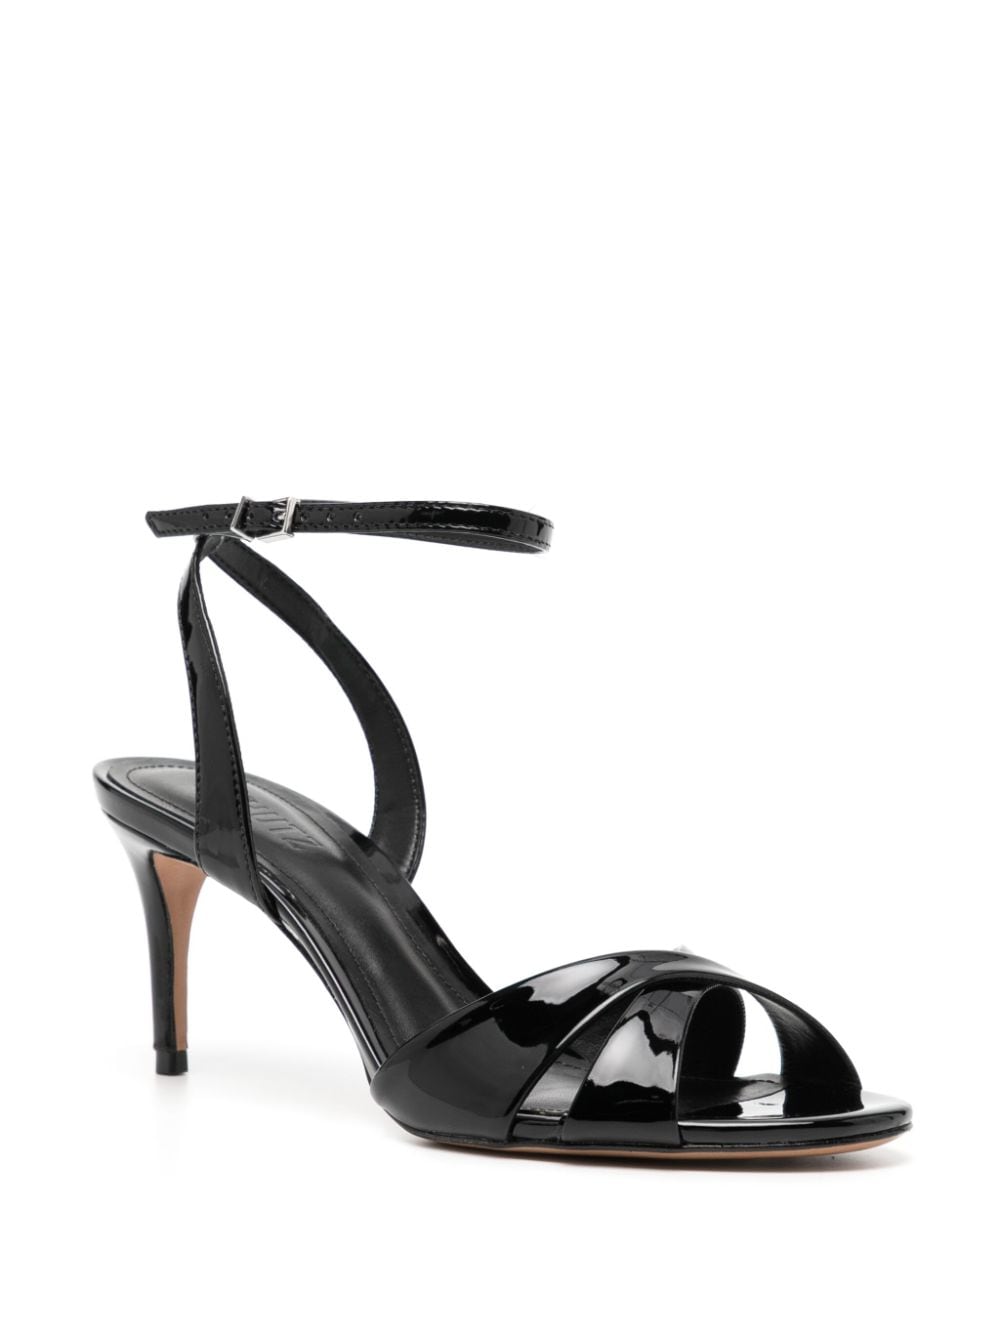 Shop Schutz Hilda 80mm Patent Leather Sandals In Black